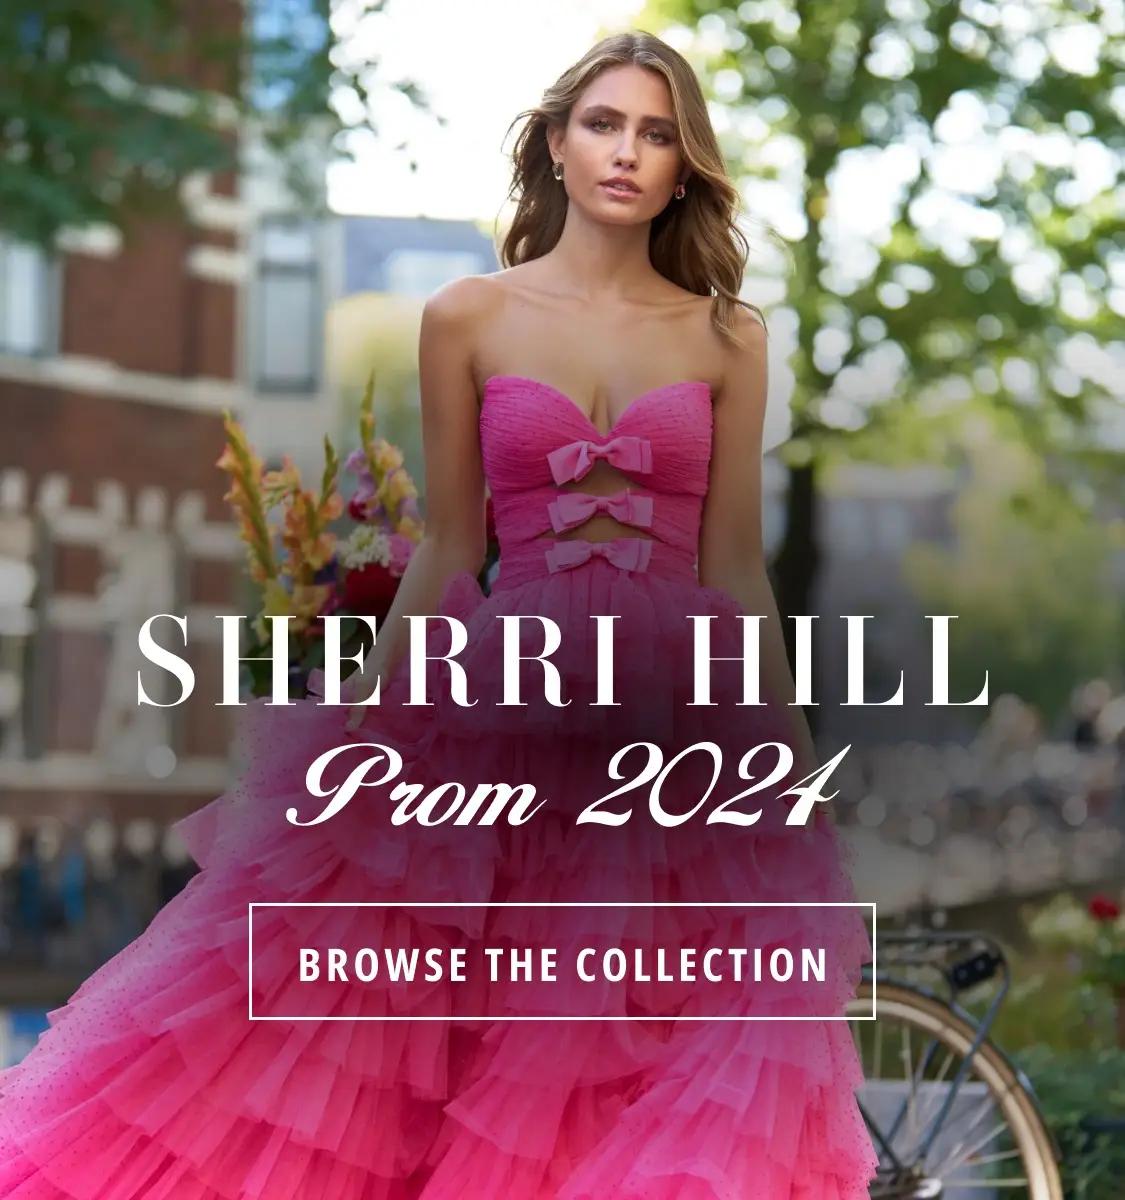 Sherri Hill Prom 2024 banner 4 mobile